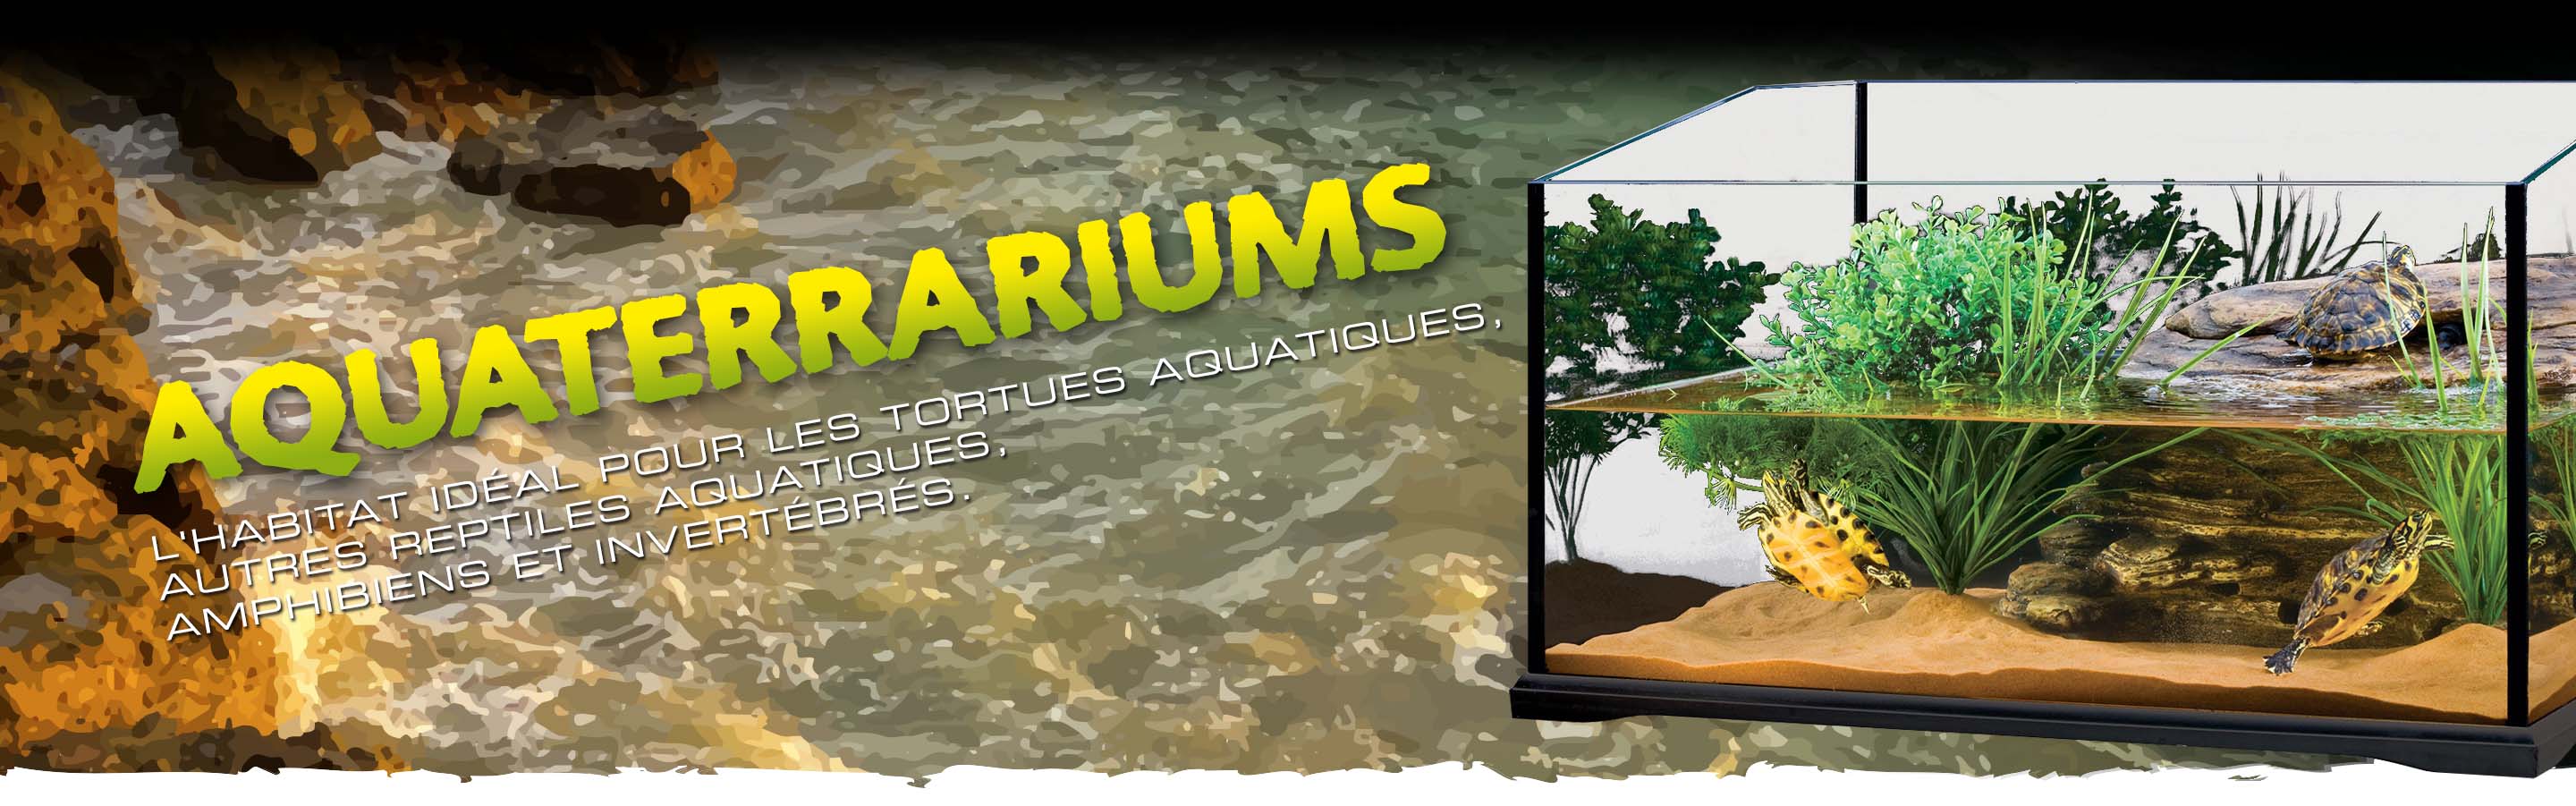 Aquatic Terrariums Header